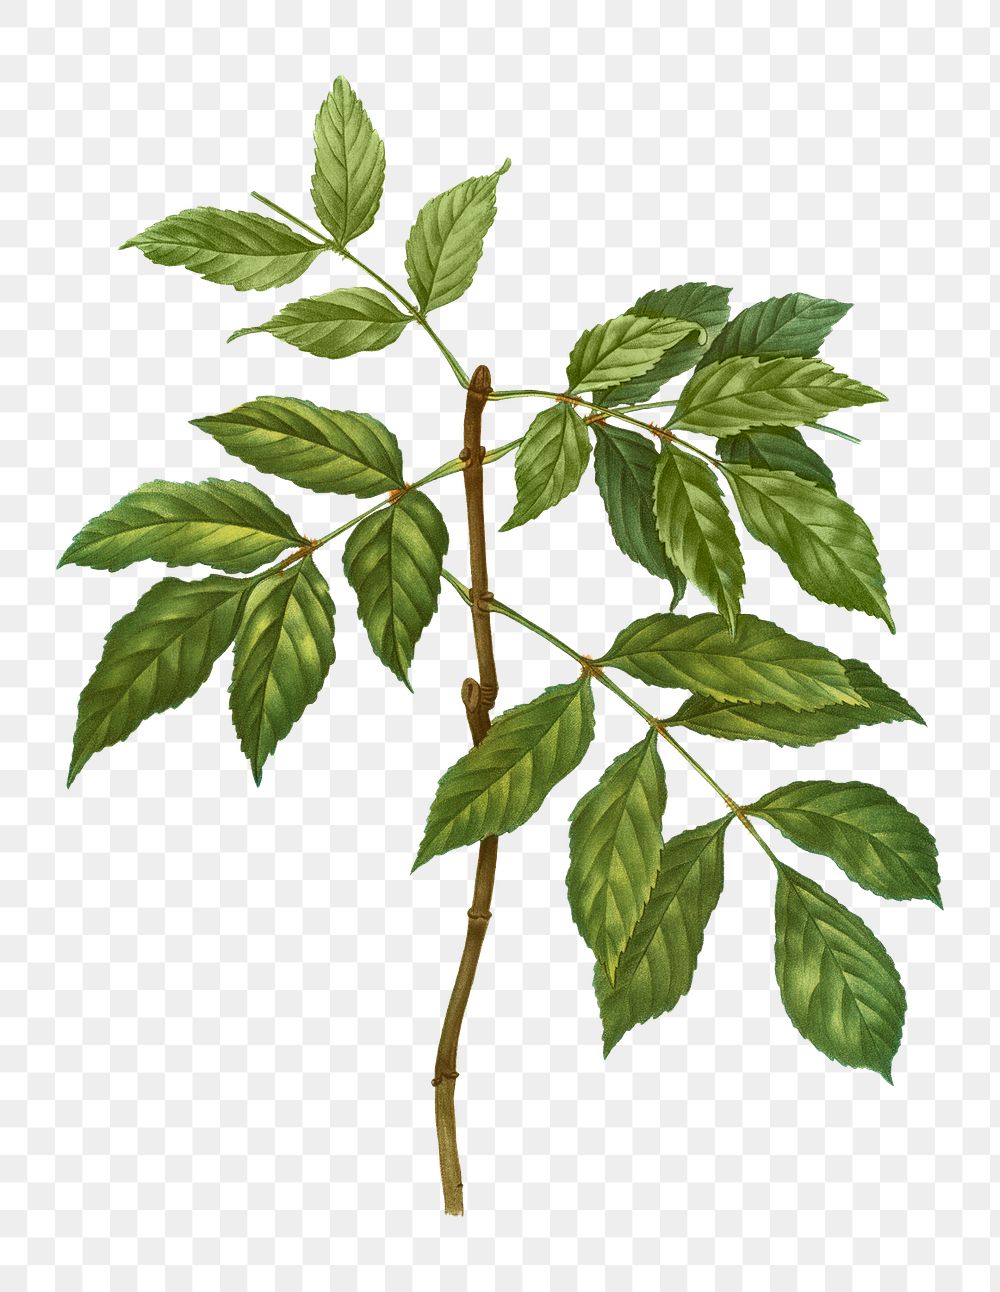 Manna ash branch plant transparent png